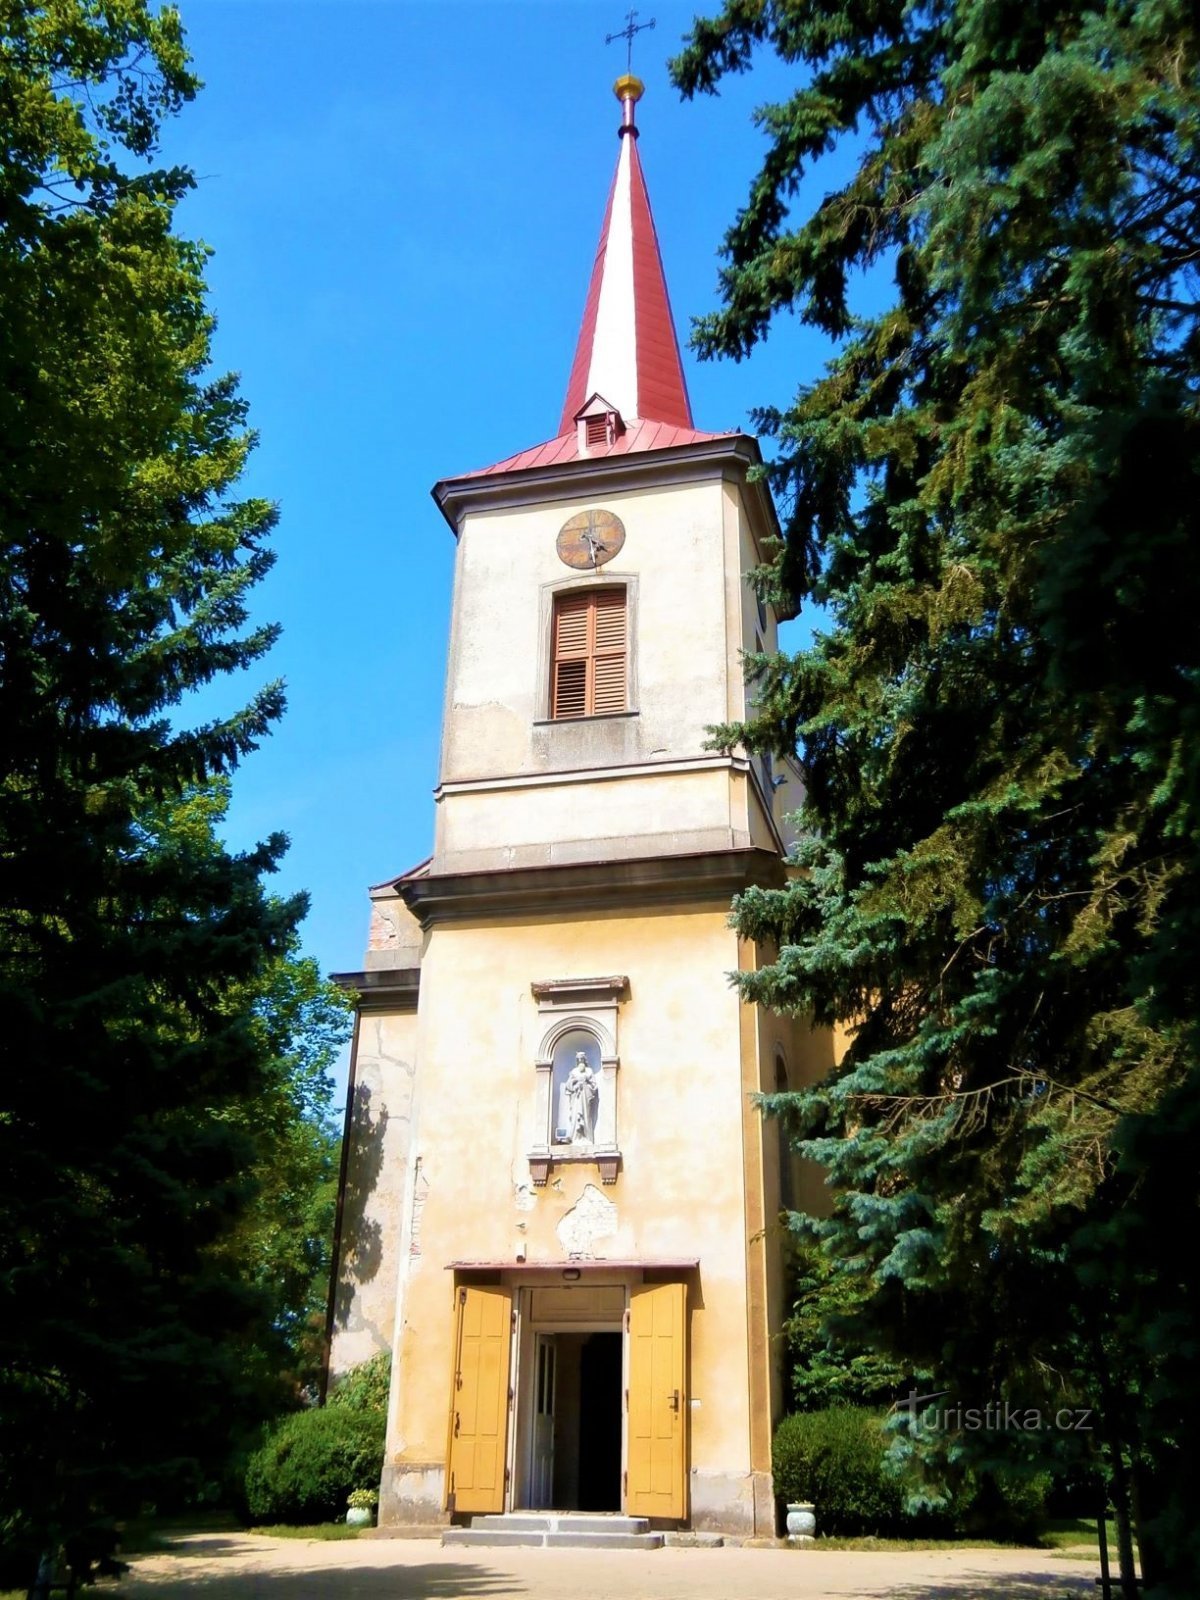 Cerkev sv. Štěpán (Černilov, 22.7.2017. julij XNUMX)